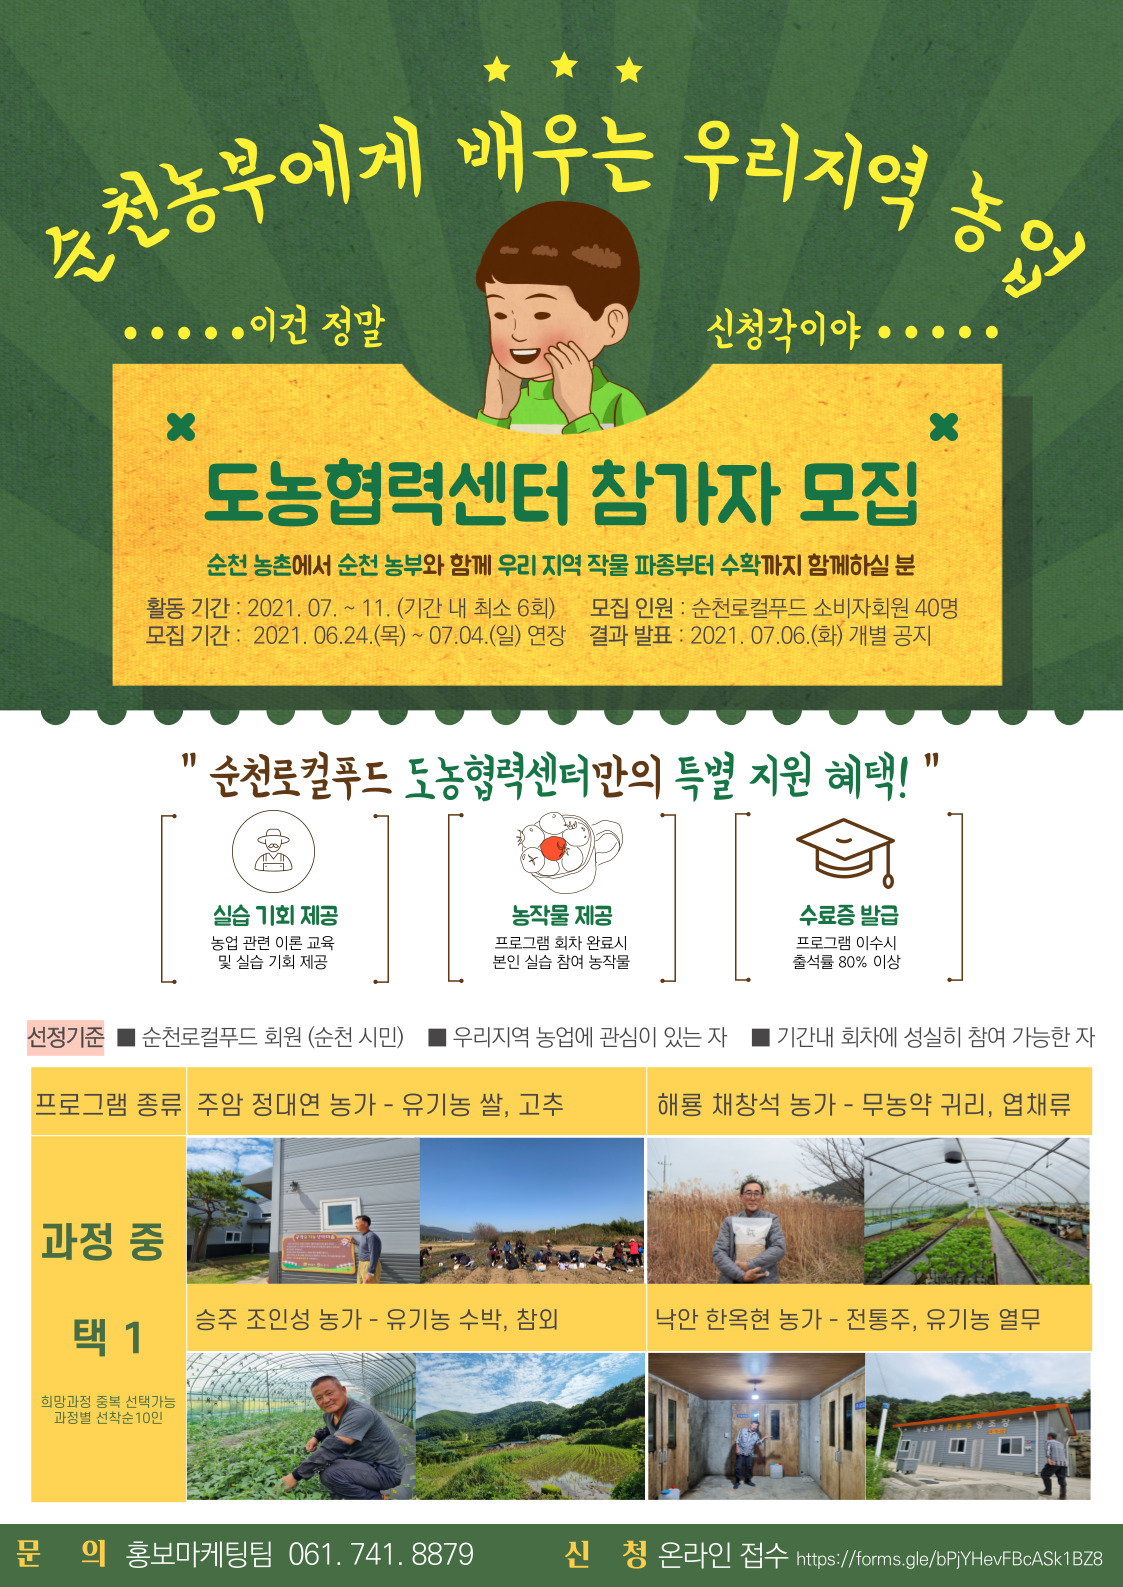 순천로컬푸드 도농협력센터 참가자 모집